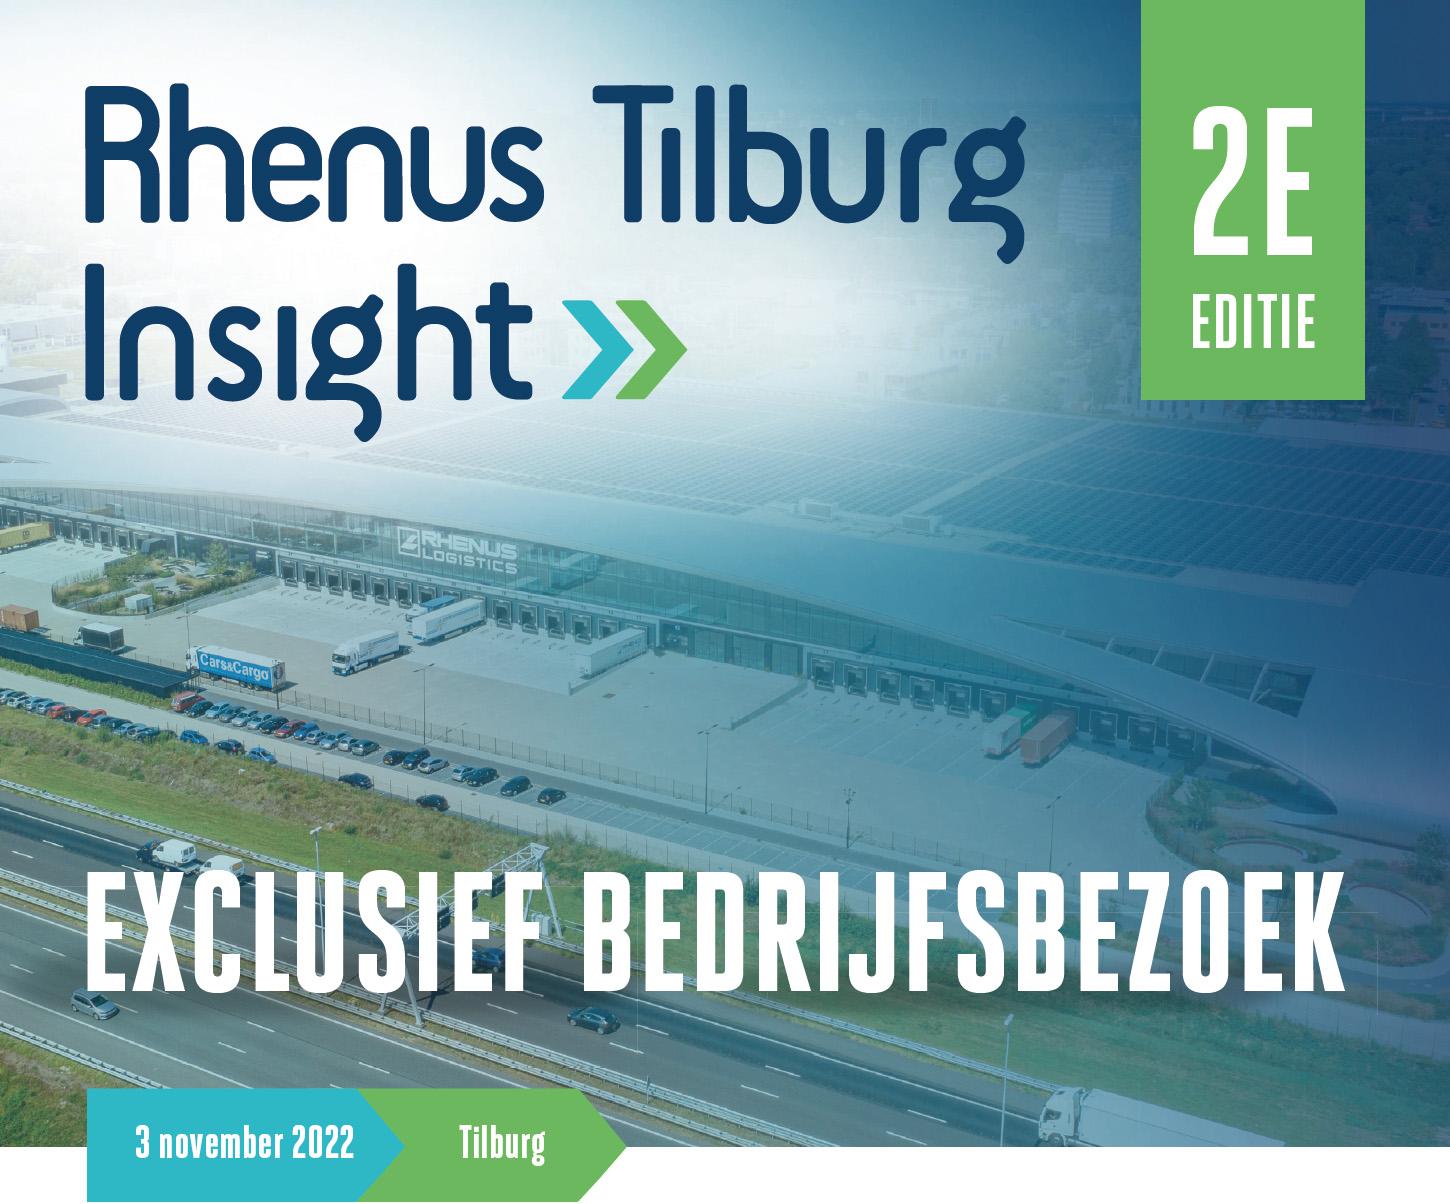 Rhenus Tilburg Insight